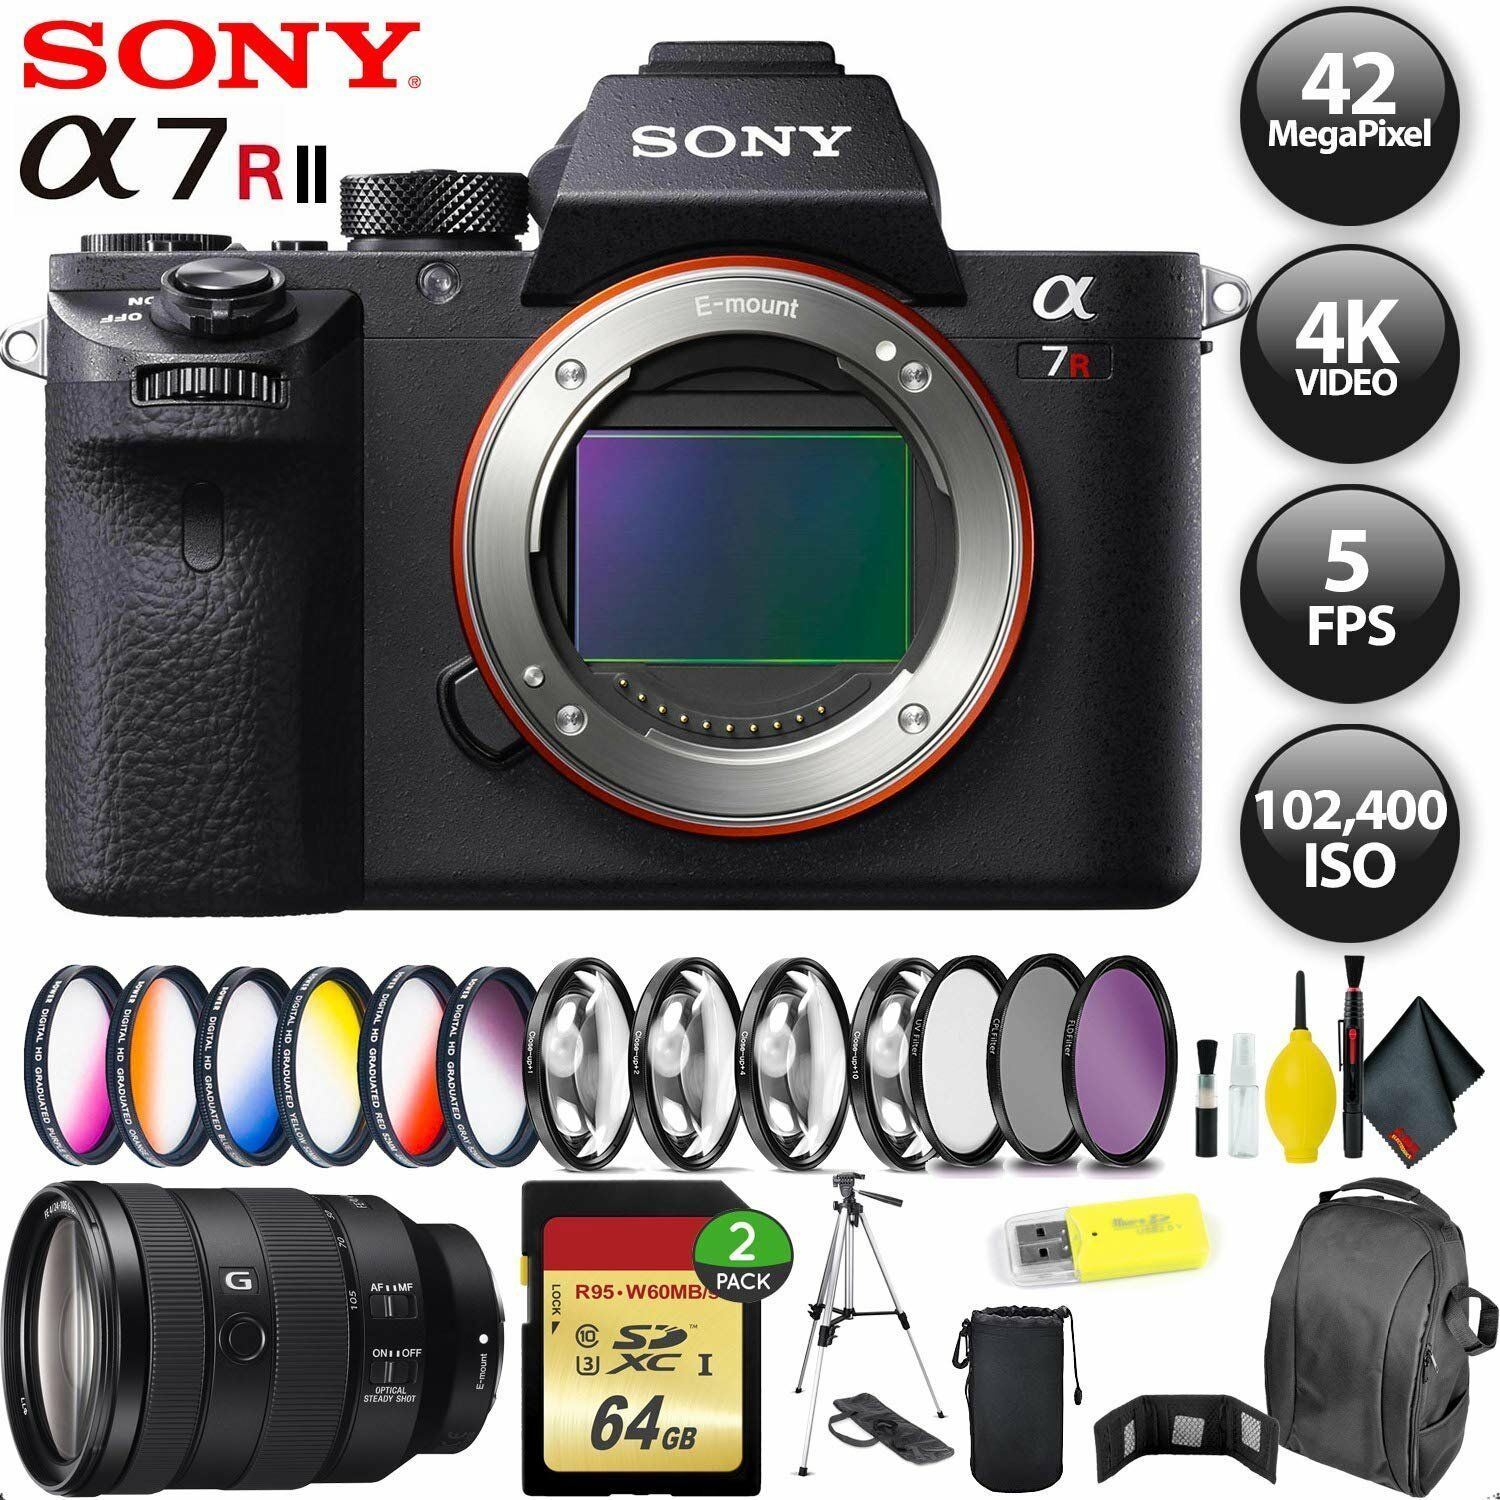 Sony Alpha a7R II Mirrorless Digital Camera International Model + 128GB Memory Card + Sony FE 24-105mm Lens